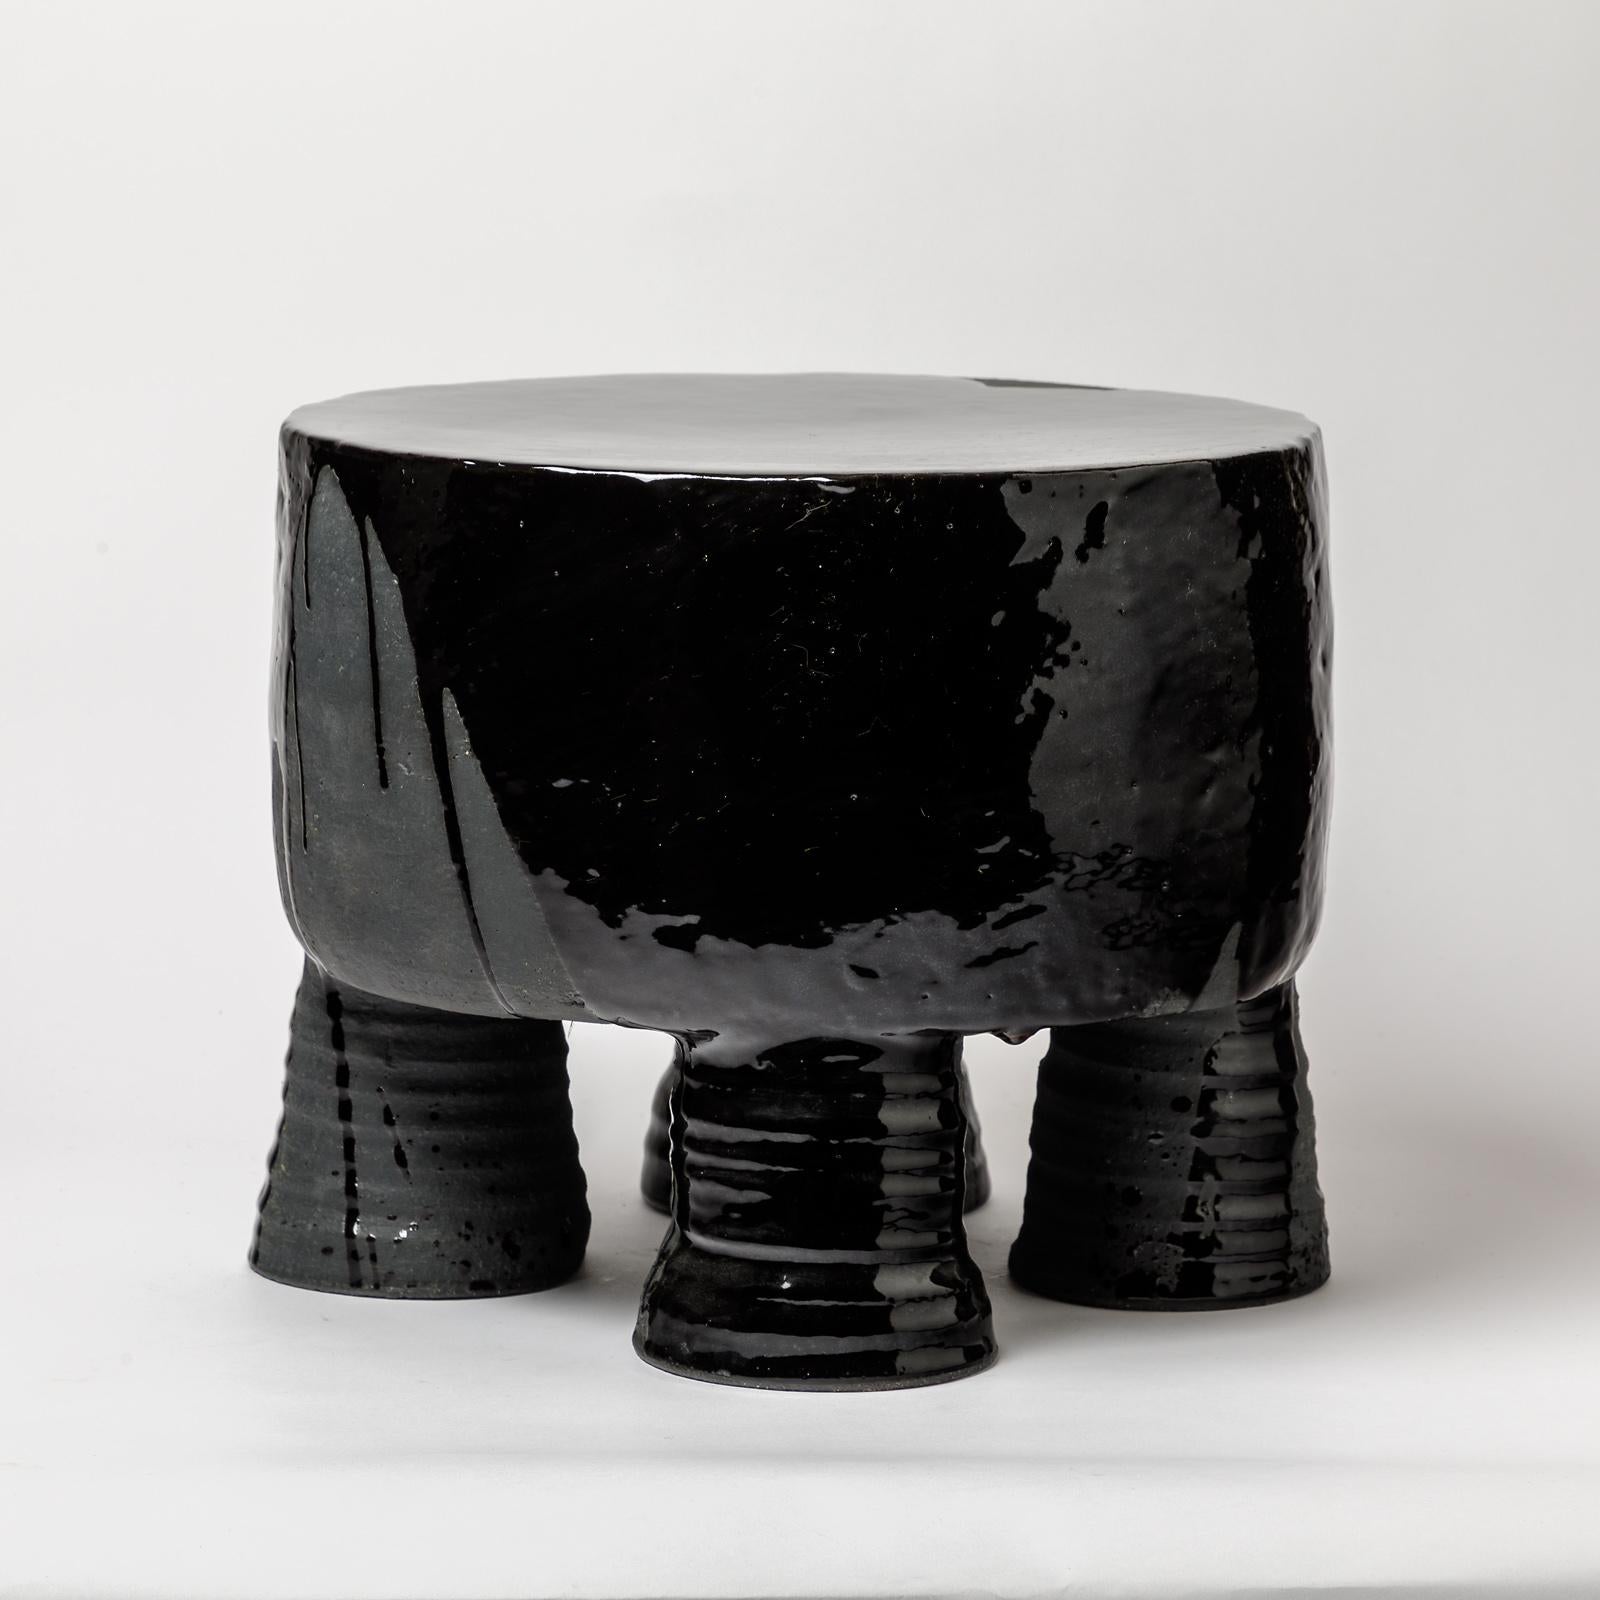 Beaux Arts Ceramic Stool with Black Glazes Decoration by Mia Jensen, circa 2021